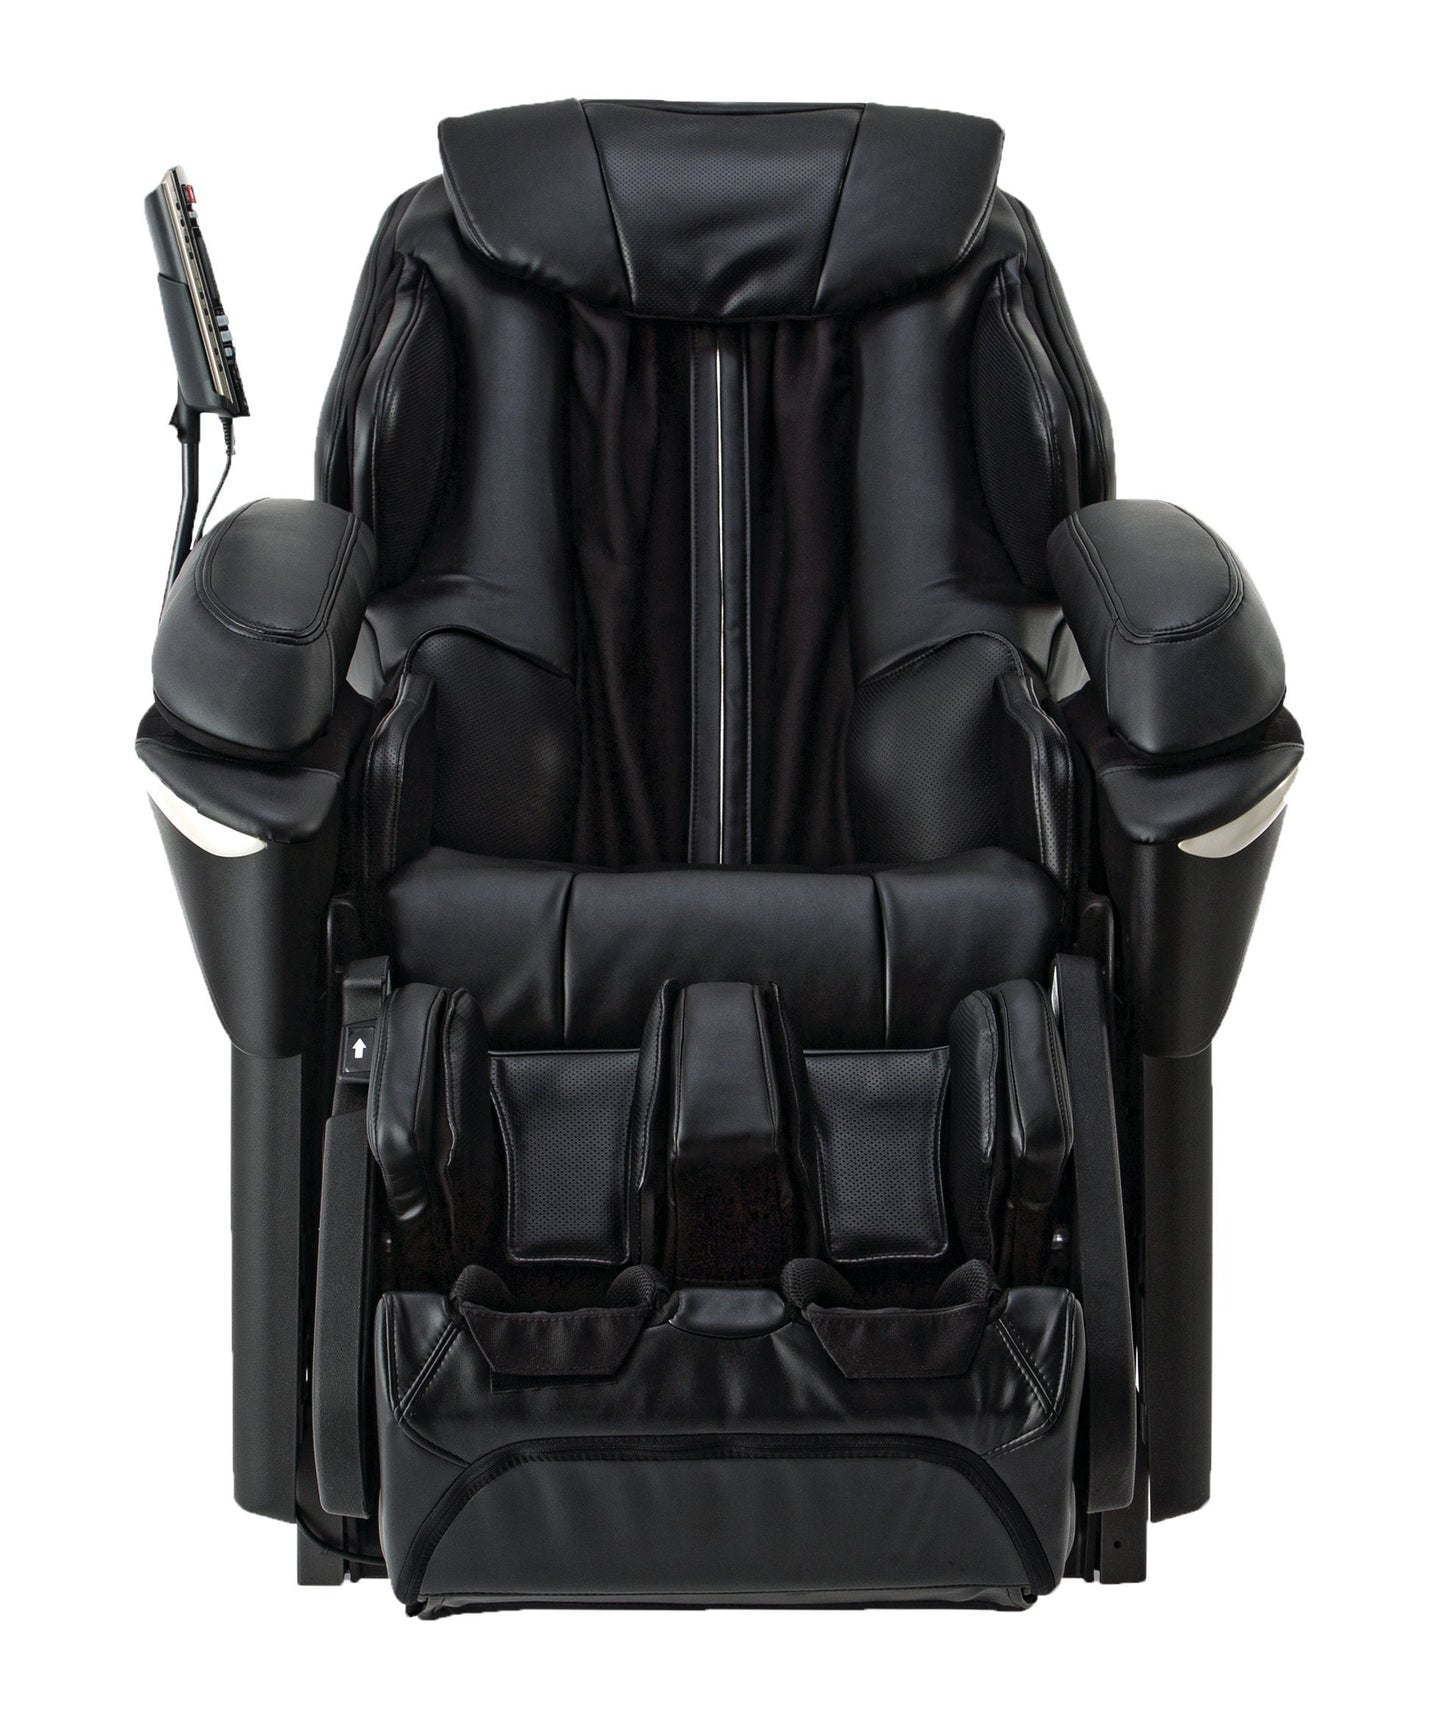 MA73 Panasonic Massage Chair